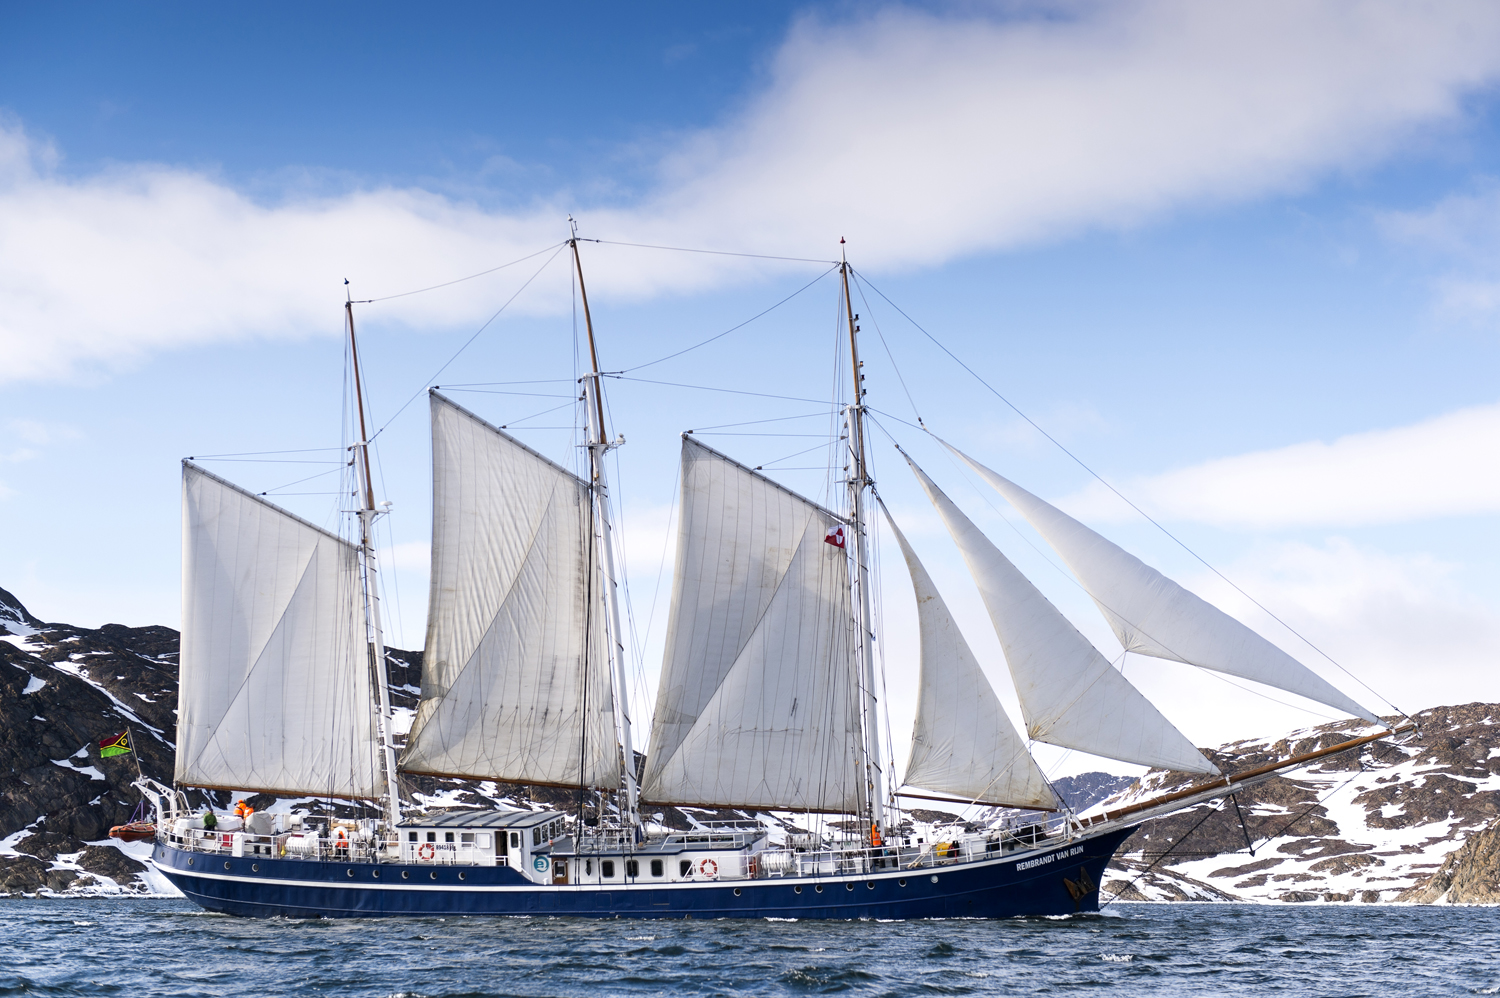 Aqua-Firma Rembrandt Arctic Sailing Ship - David Slater